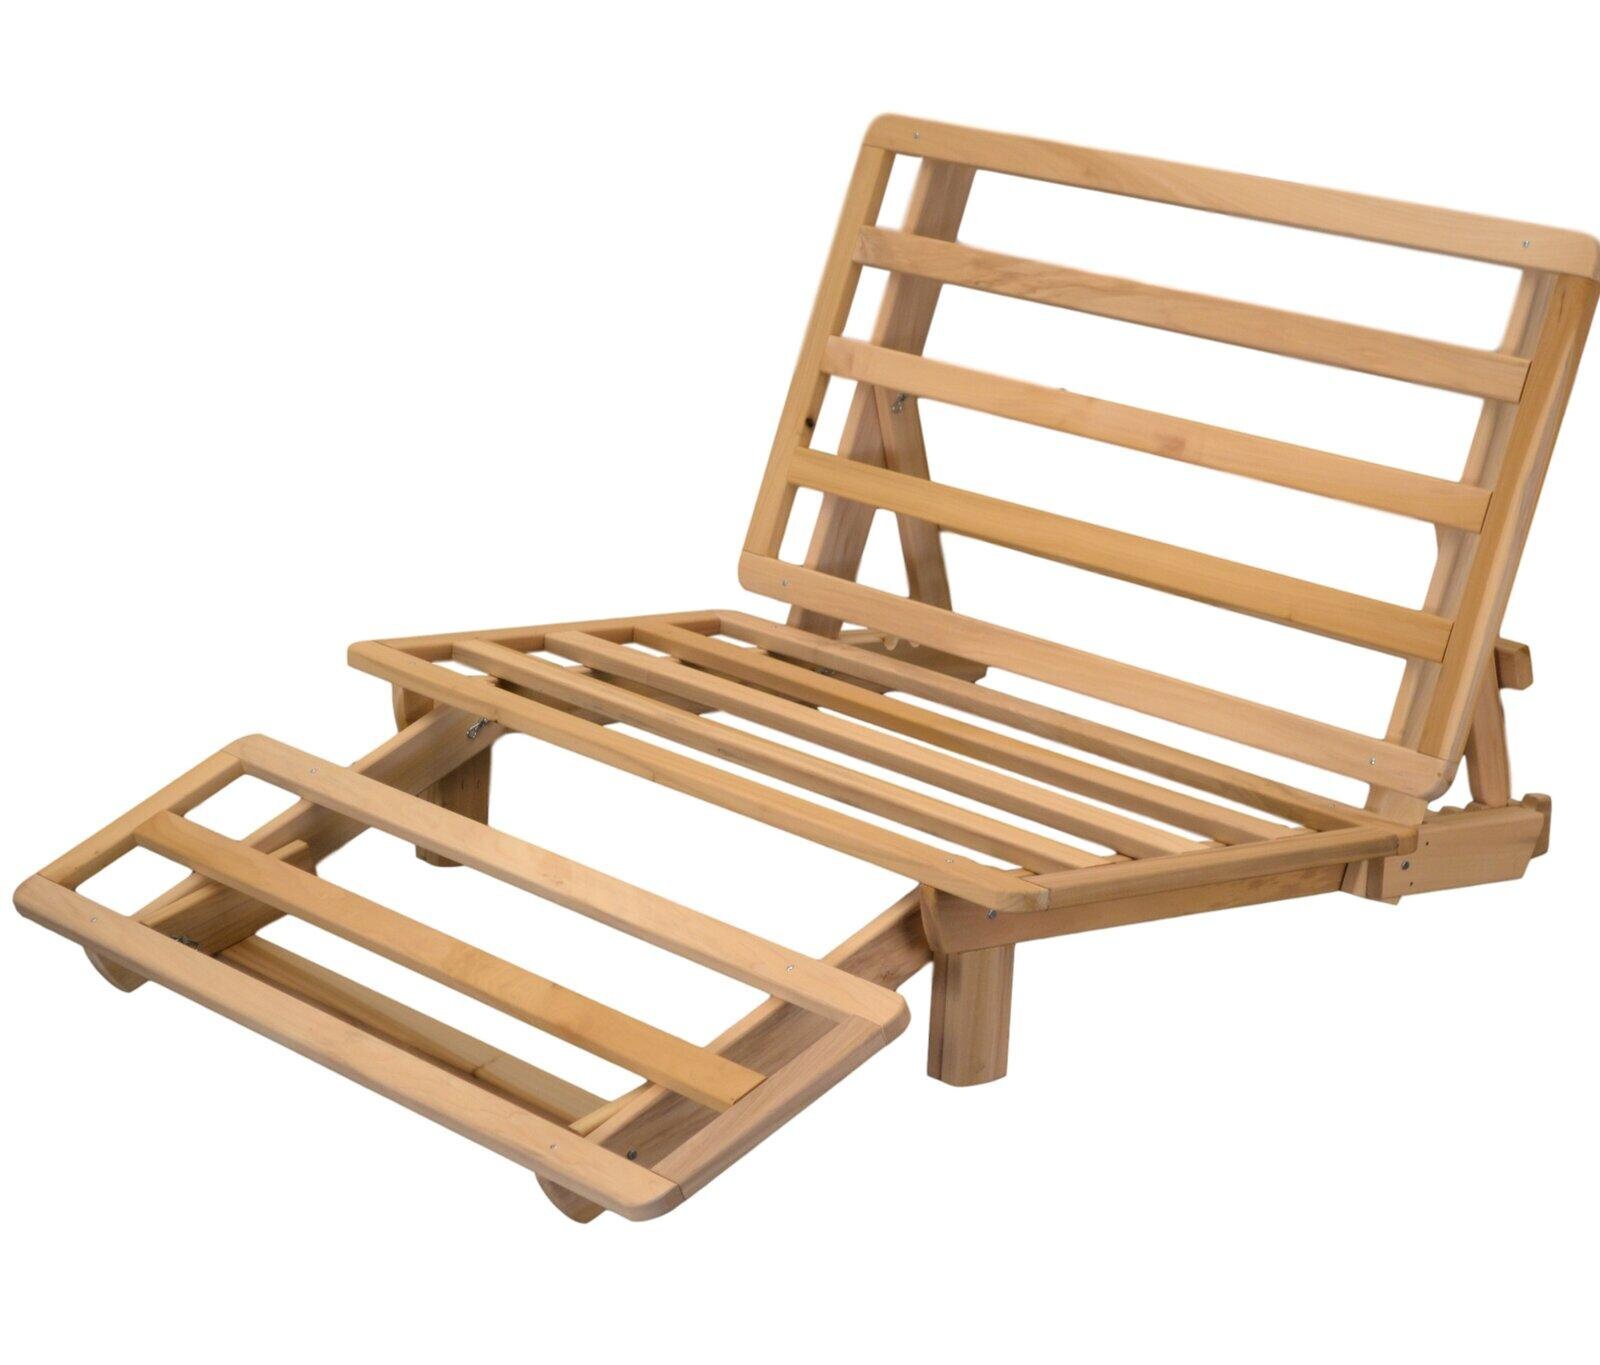 Wood Frame Multi-functional Serta Futon for Living - Etsy